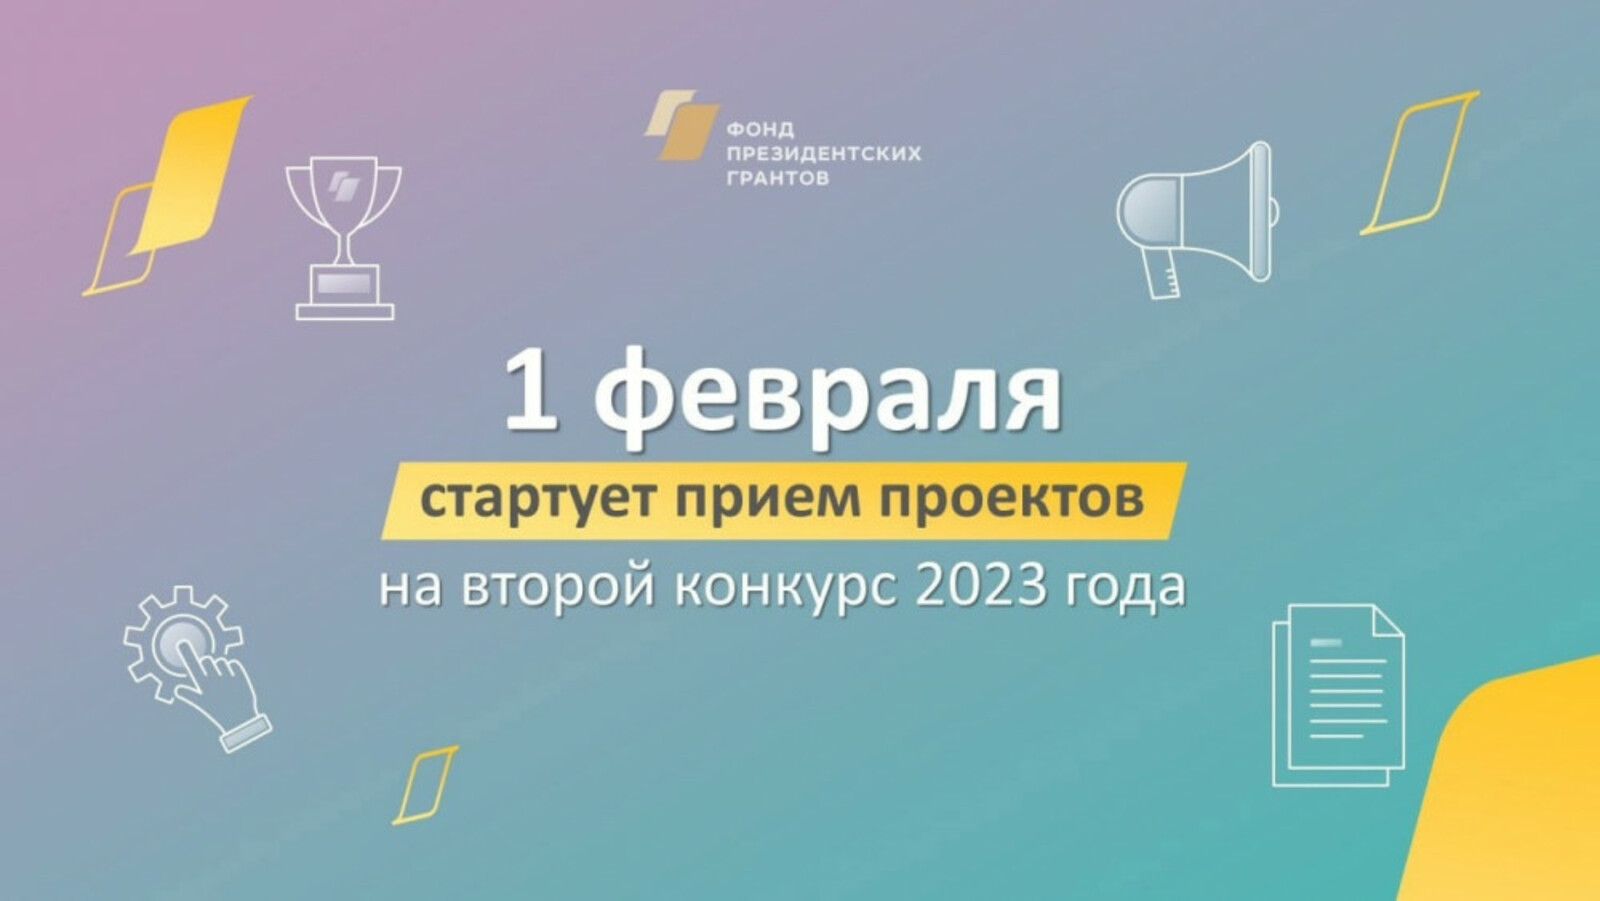 С 1 февраля НКО Башкирии могут принять участие во втором конкурсе президентских грантов 2023 года